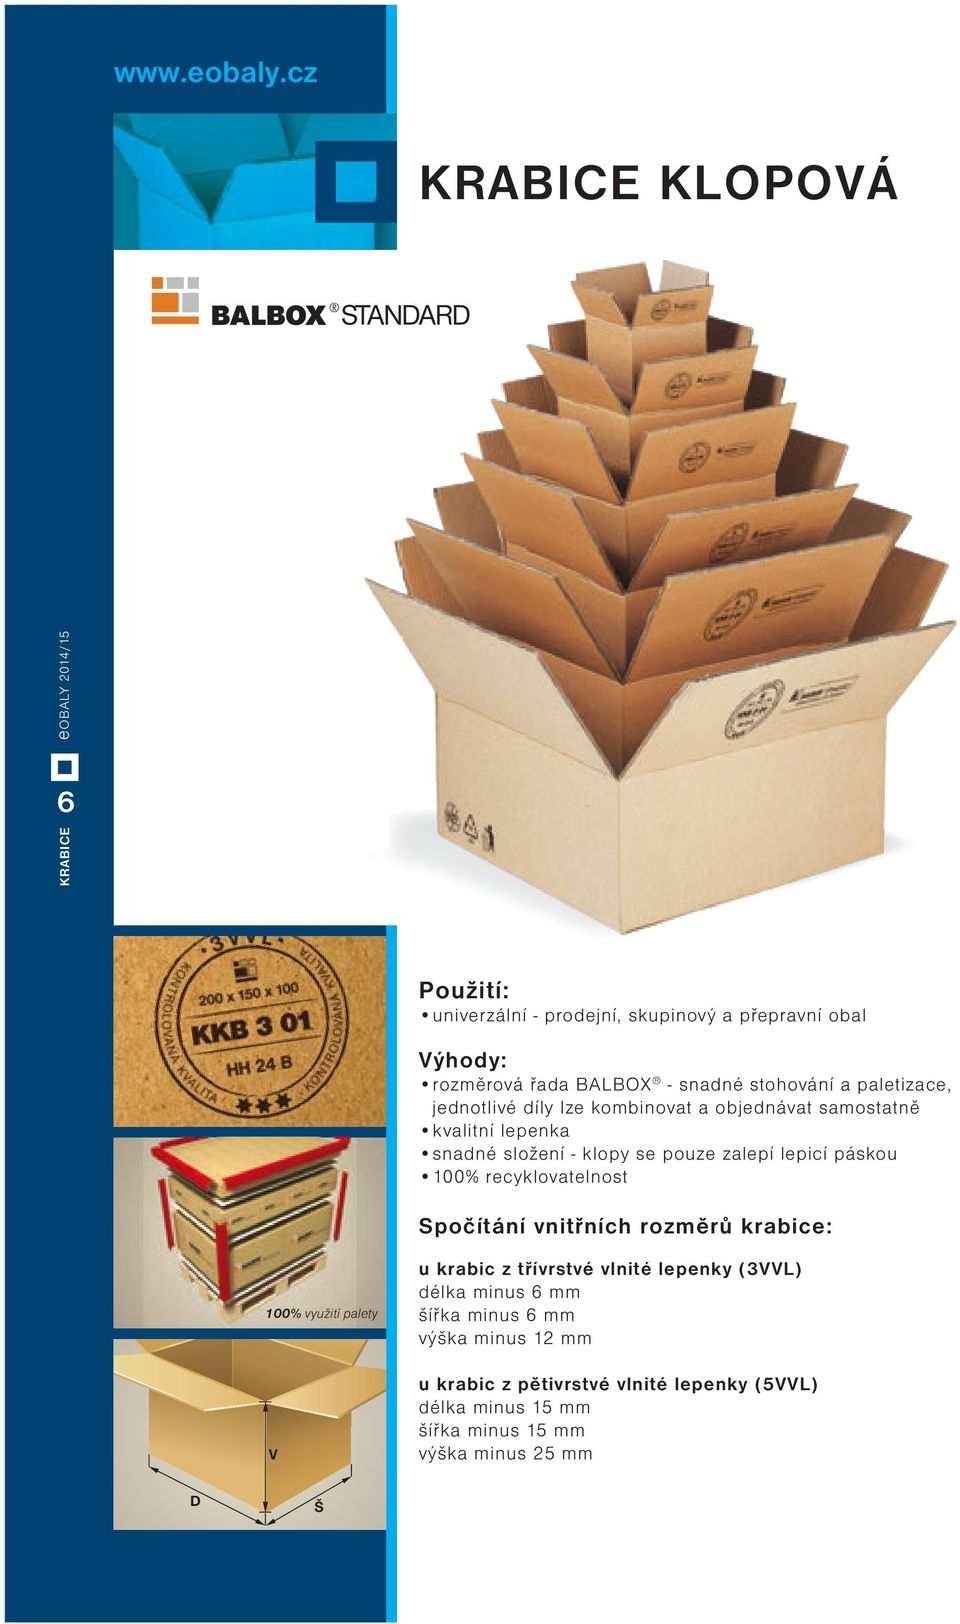 recyklovatelnost Spočítání vnitřních rozměrů krabice: 100% využití palety V u krabic z třívrstvé vlnité lepenky (3VVL) délka minus 6